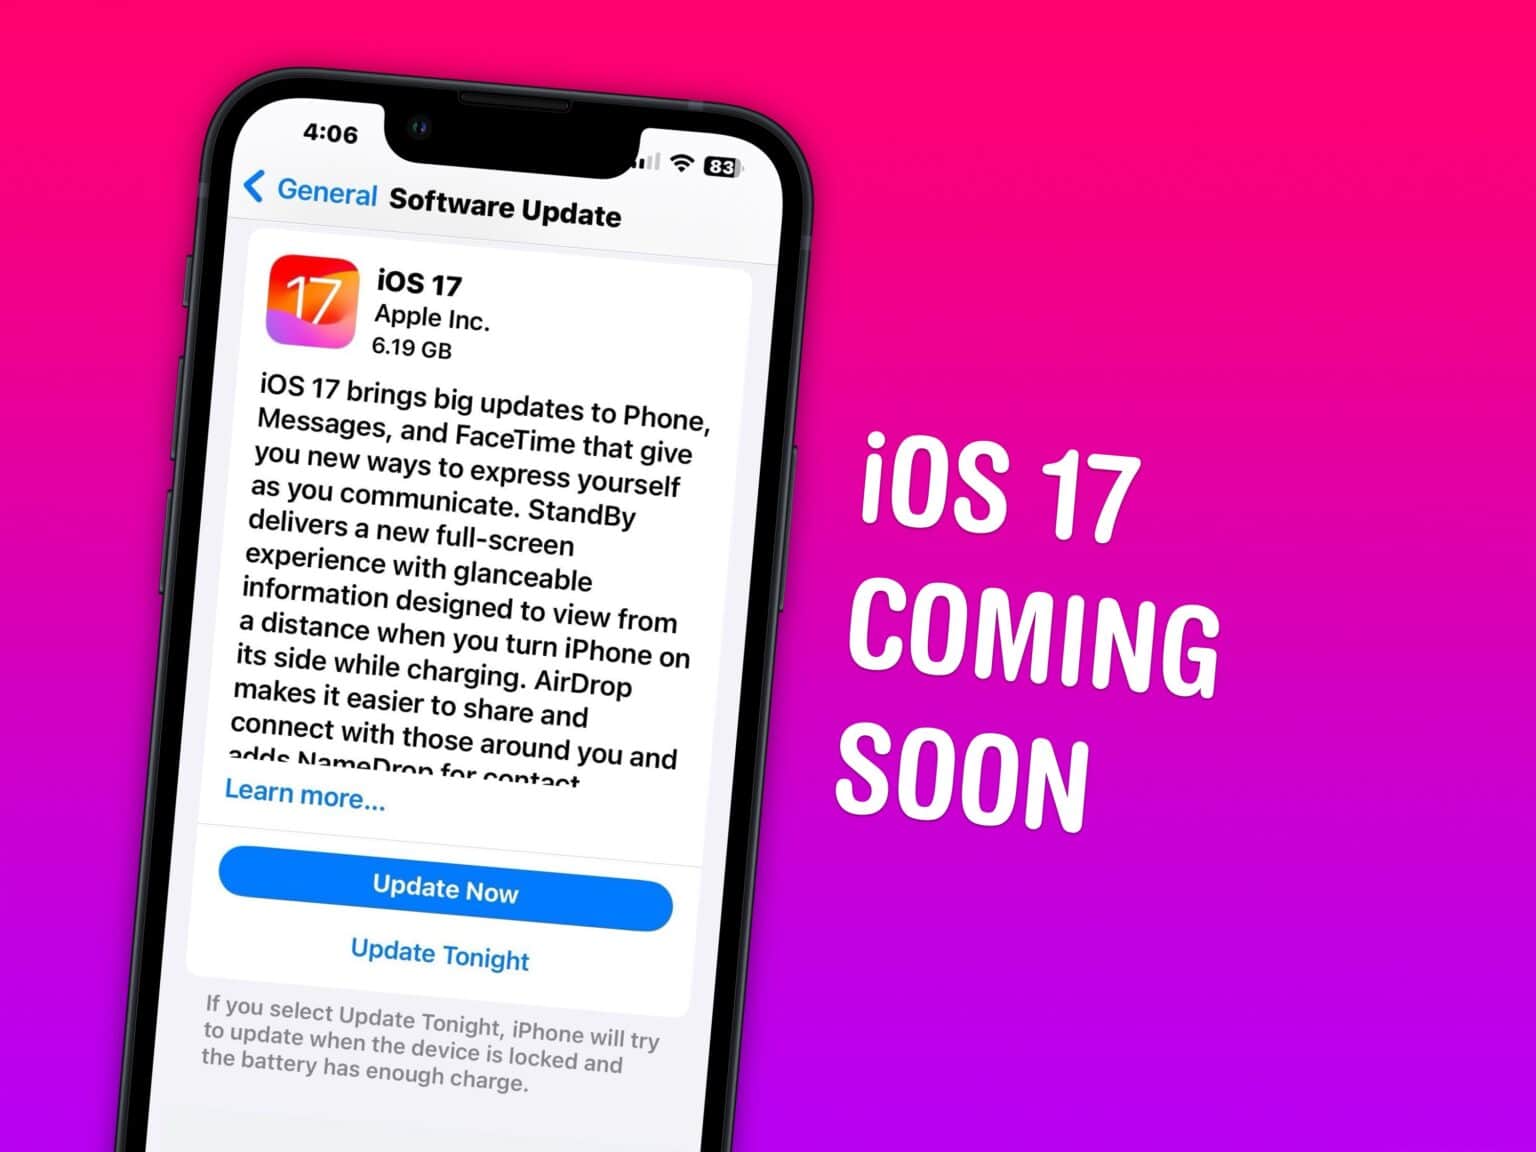 iOS 17 Coming Soon